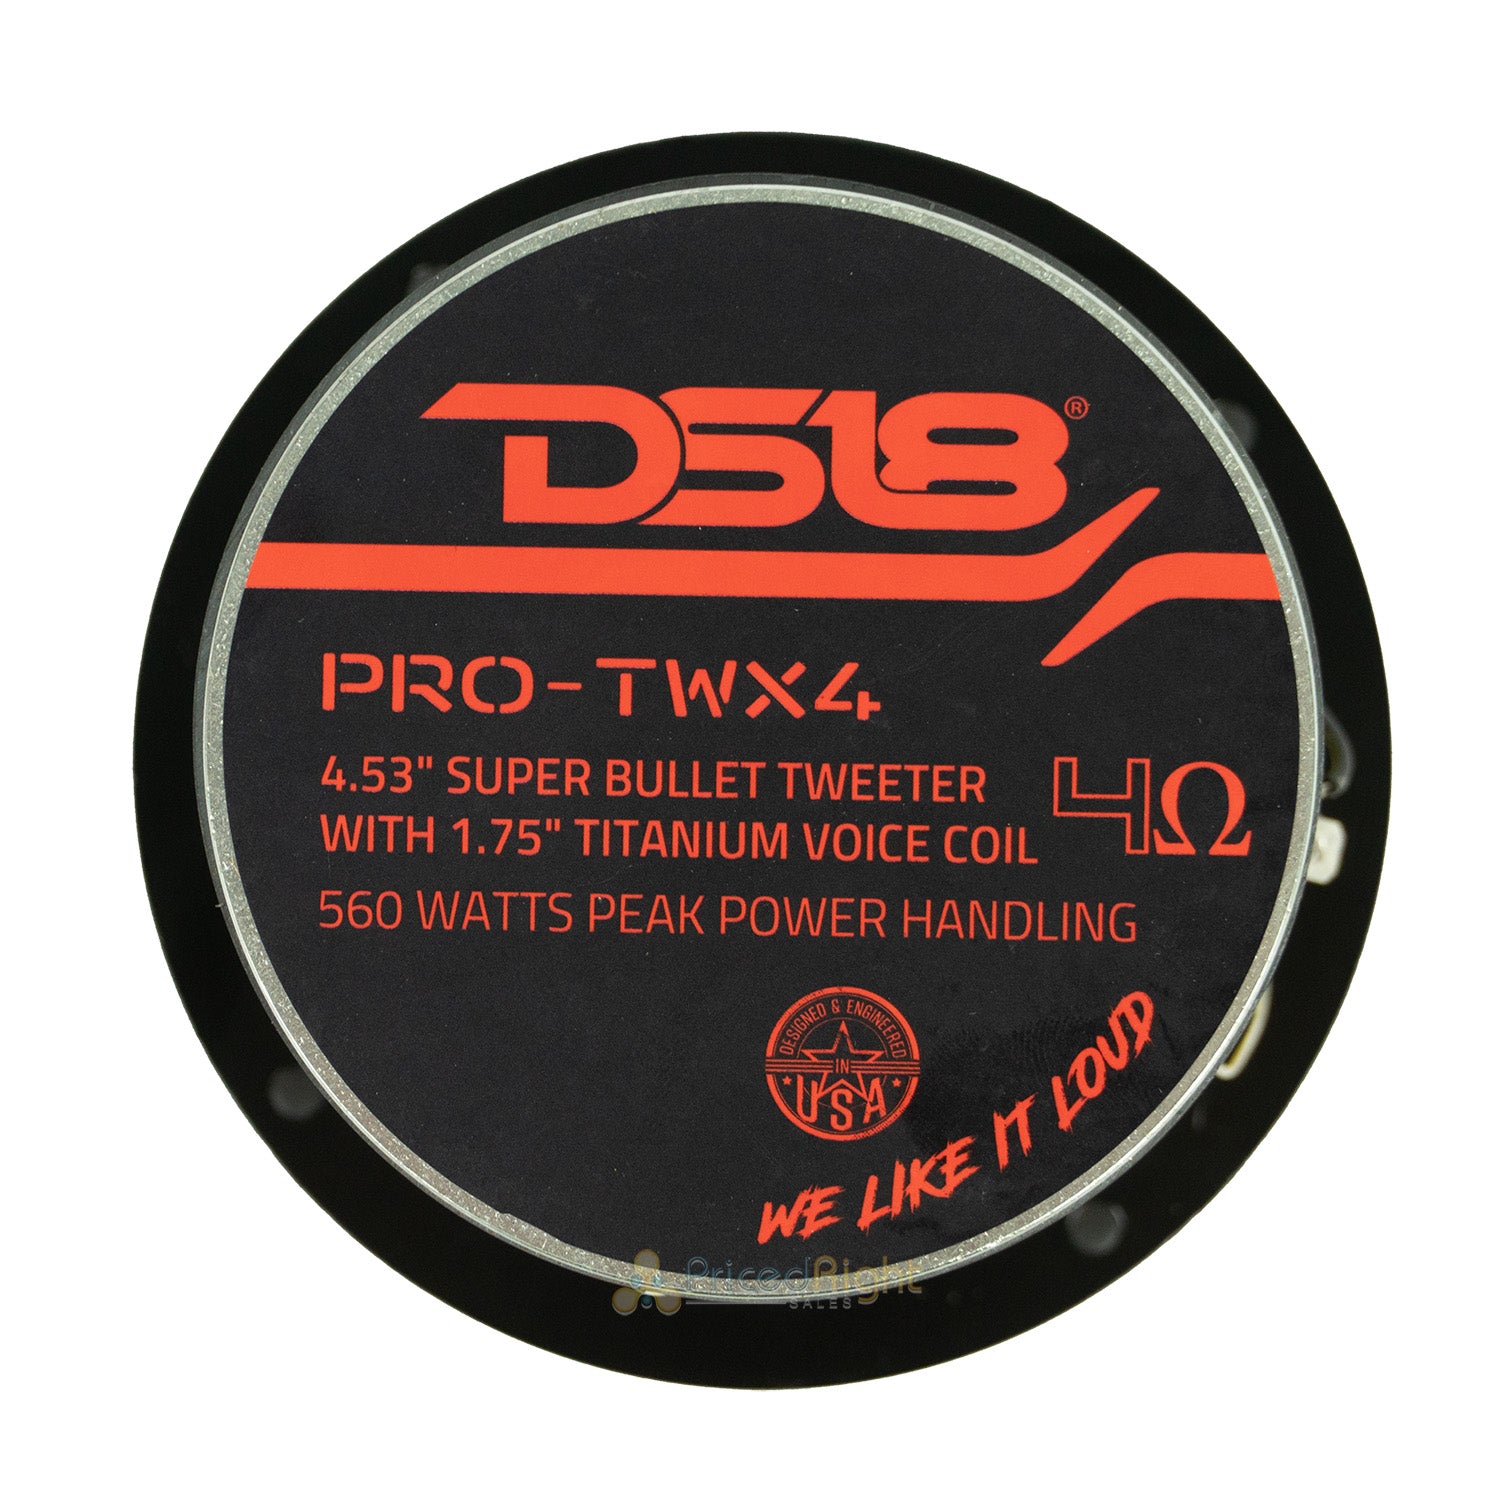 DS18 Pro 4.5" Super Bullet Tweeter 560W 1.75" Titanium 4 OHM Voice Coil PRO-TWX4